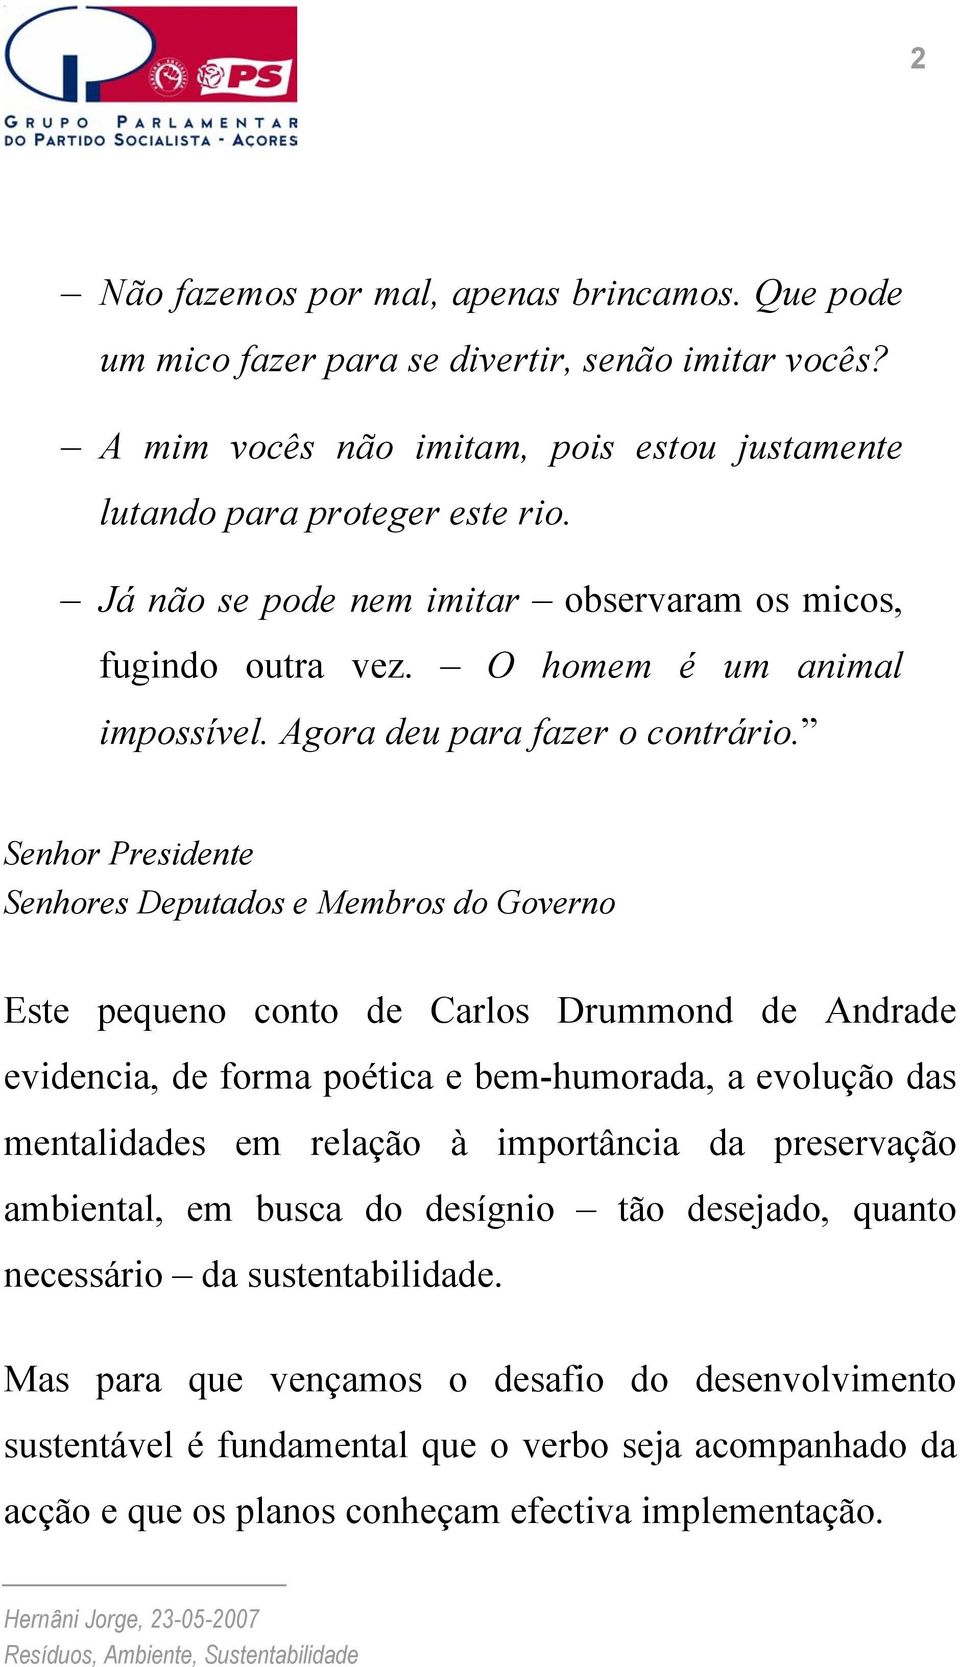 Senhor Presidente Senhores Deputados e Membros do Governo Este pequeno conto de Carlos Drummond de Andrade evidencia, de forma poética e bem-humorada, a evolução das mentalidades em relação à